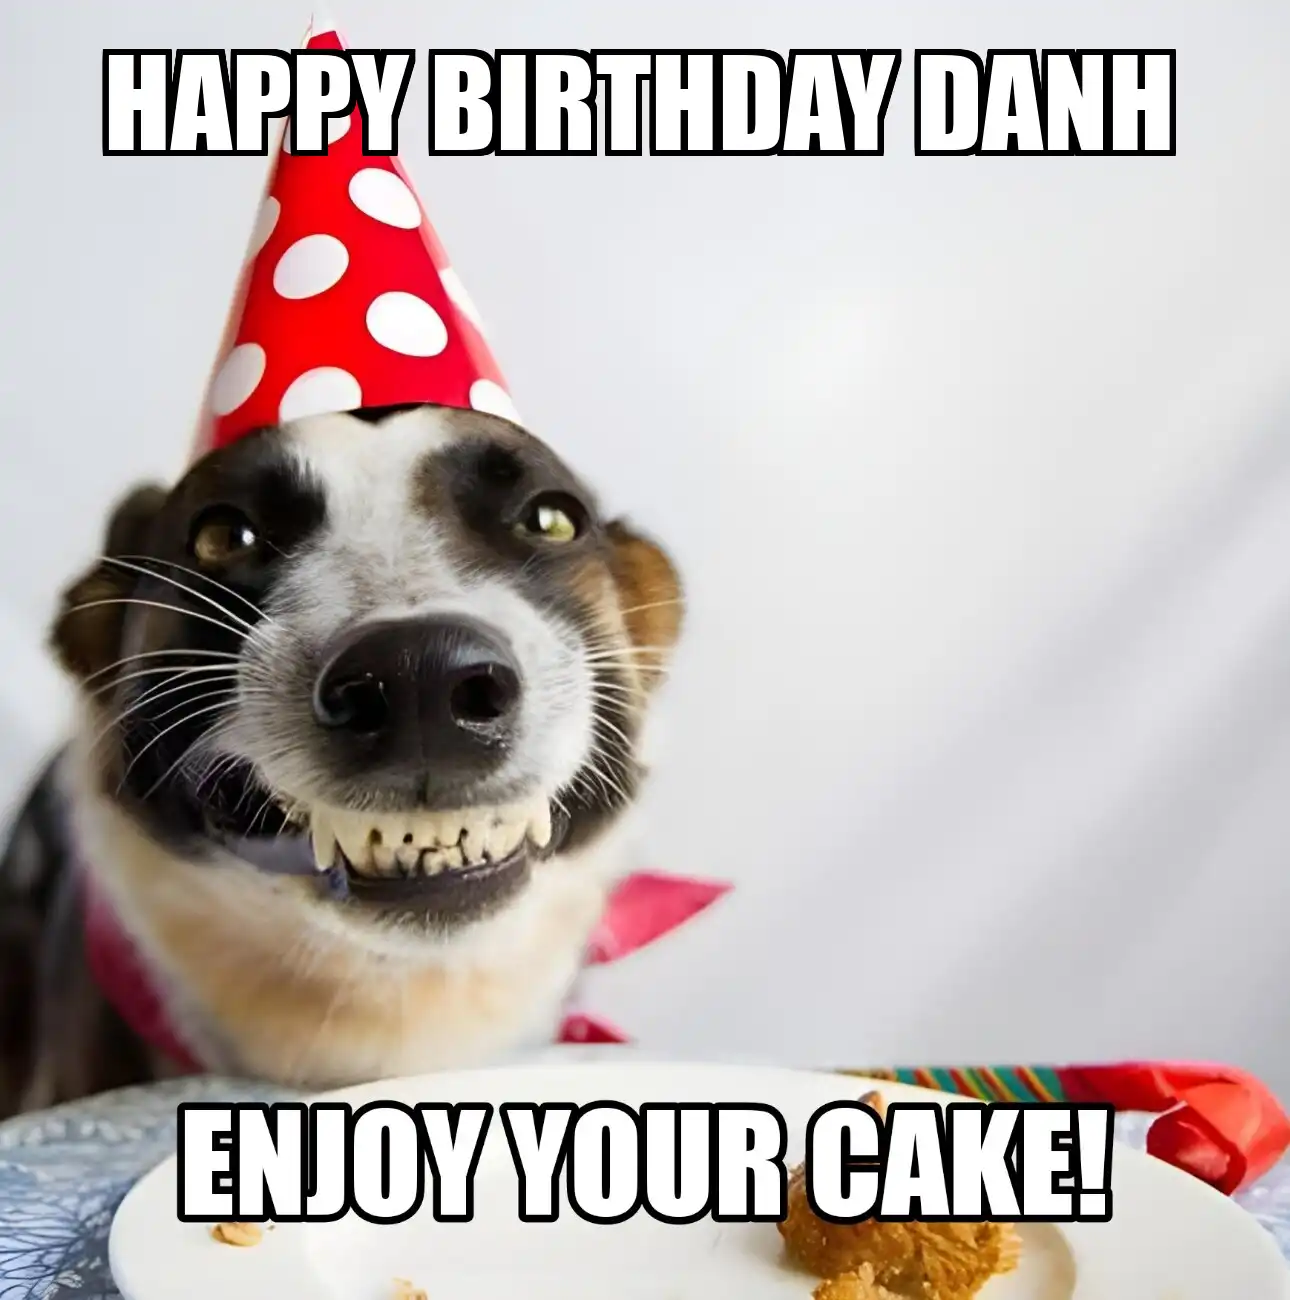 Happy Birthday Danh Enjoy Your Cake Dog Meme